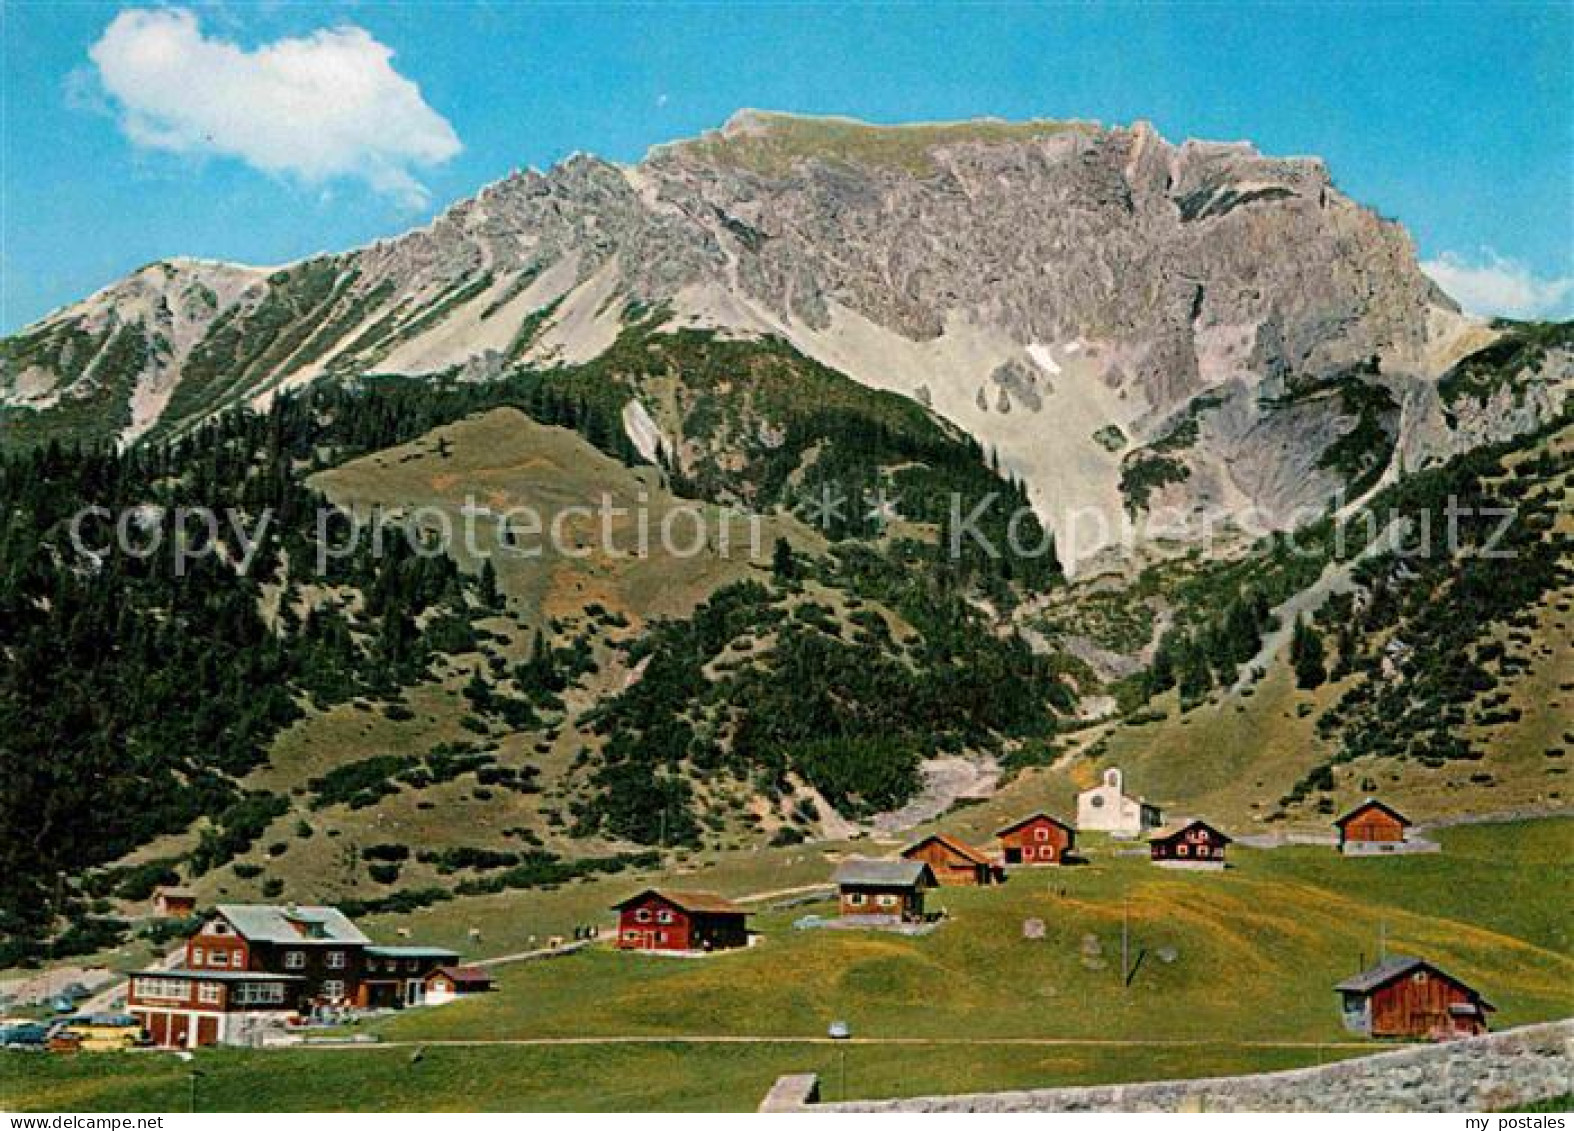 72622797 Malbun Alpenhotel Malbun Mit Gamsgrat Und Ochsenkopf  - Liechtenstein